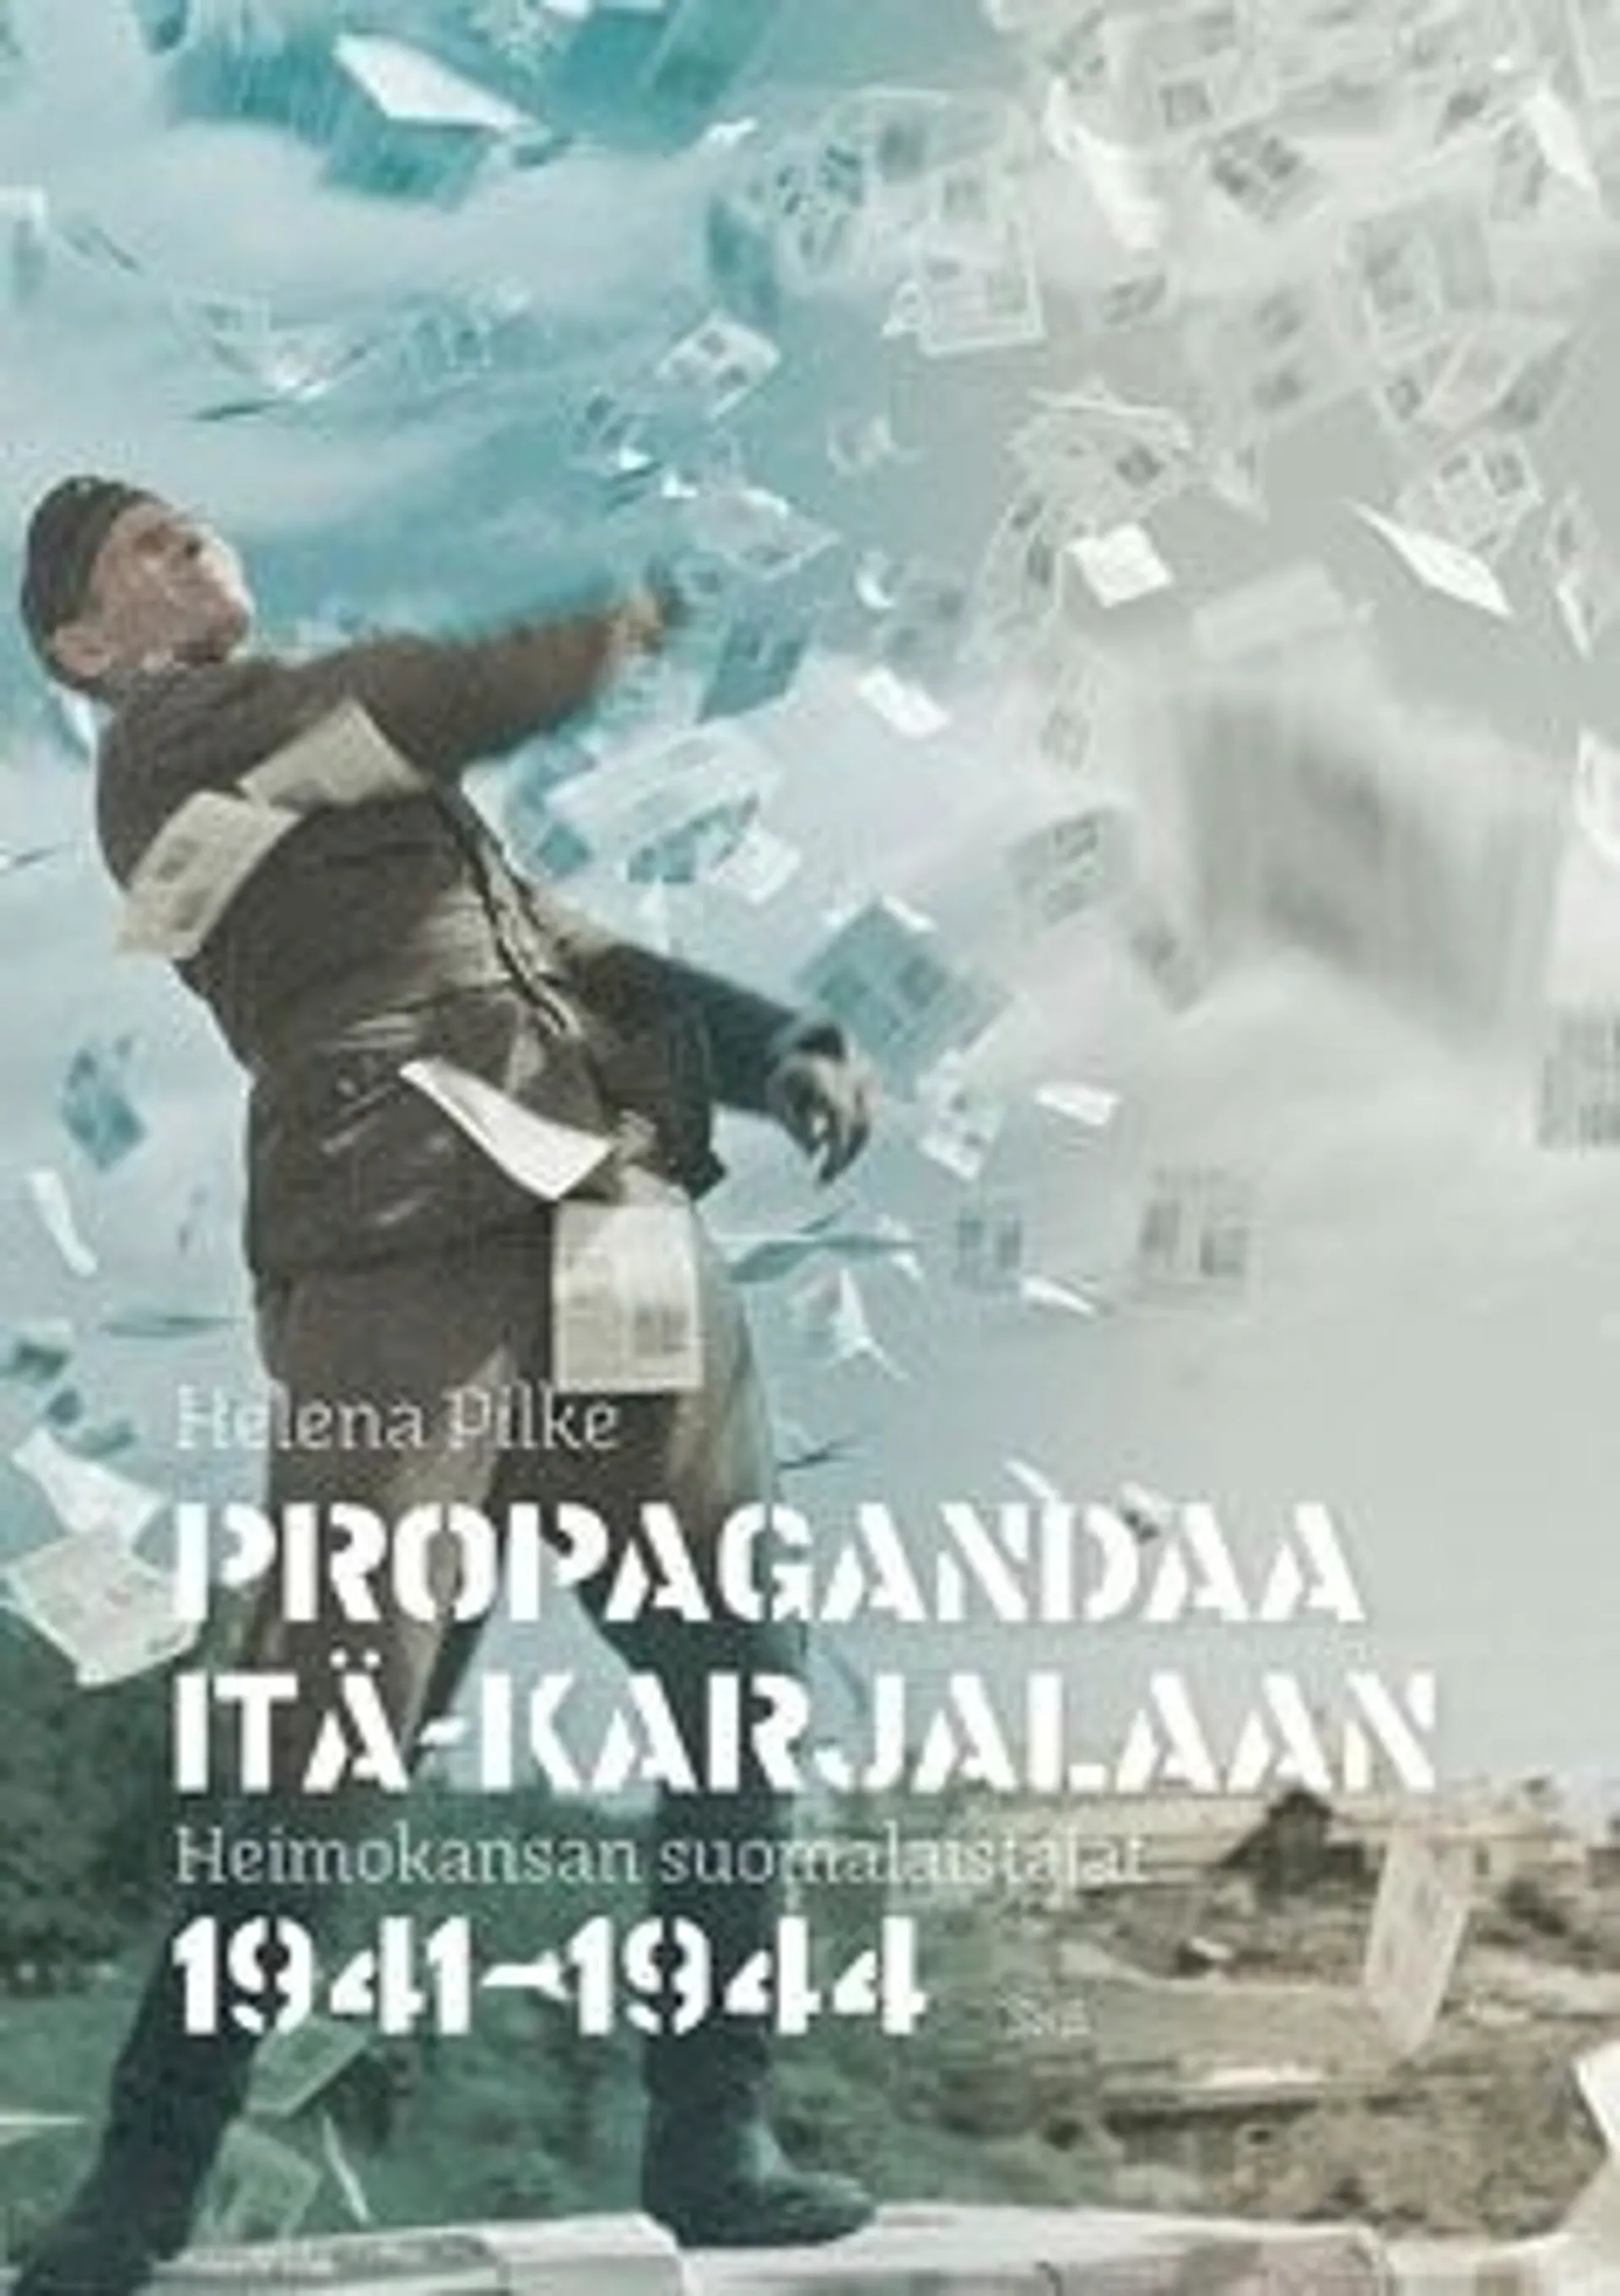 Pilke, Propagandaa Itä-Karjalaan